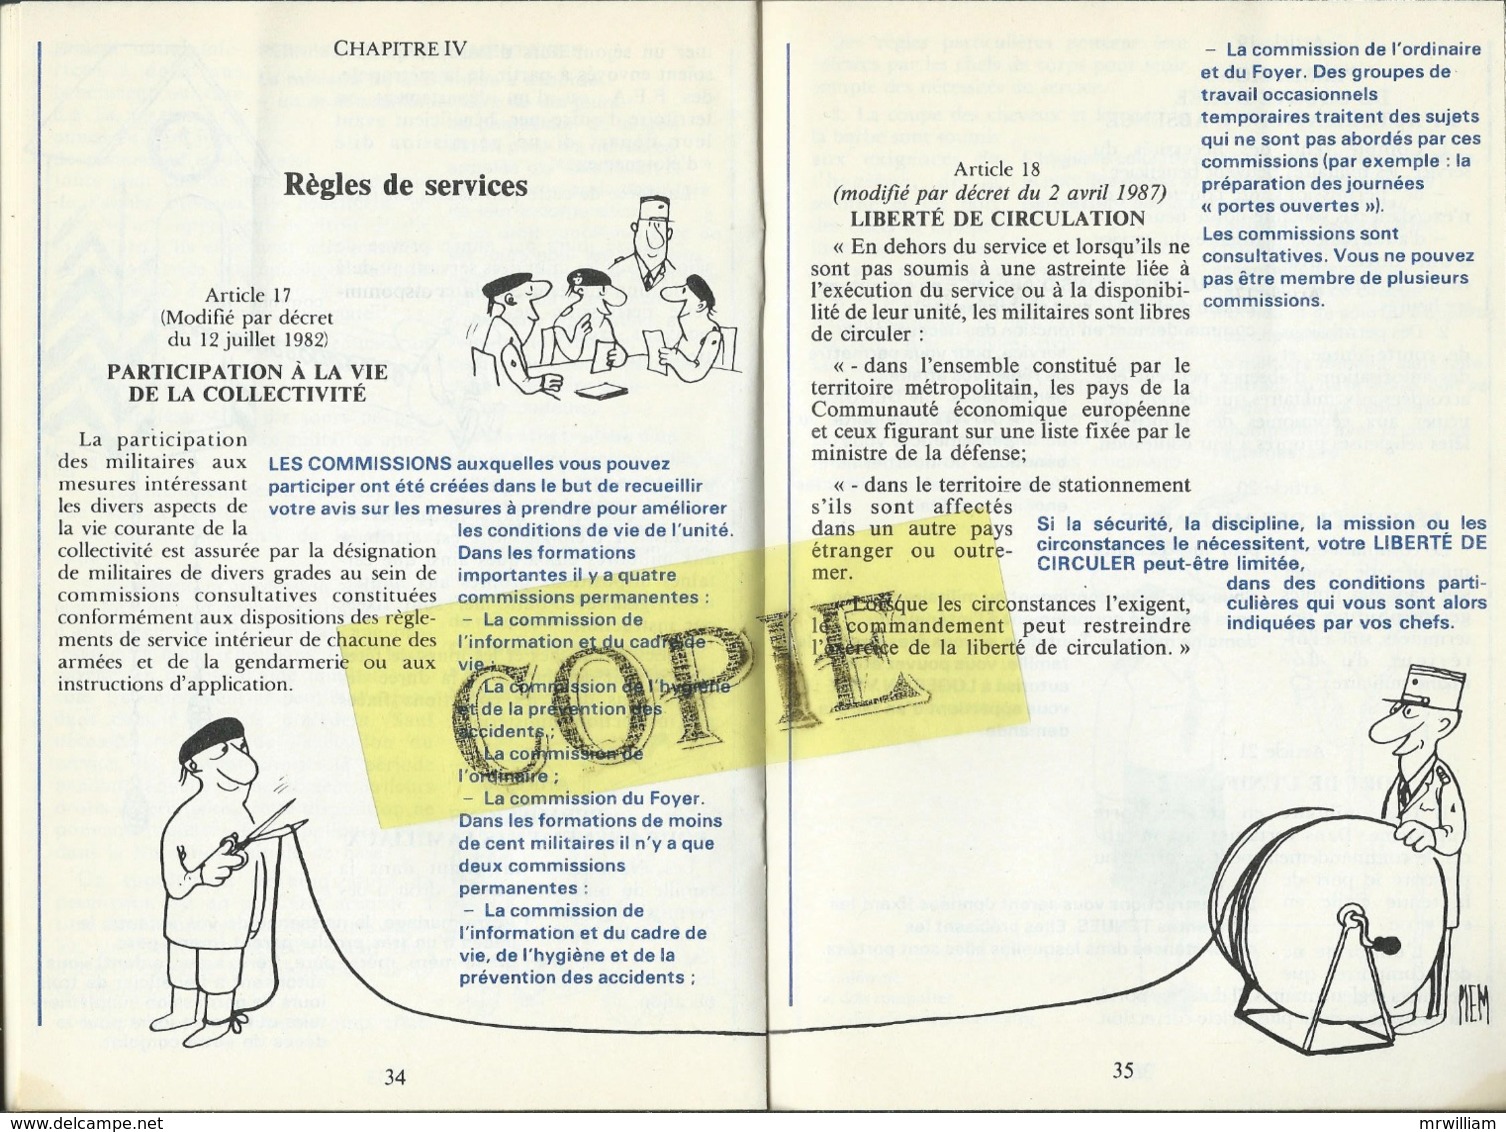 Réglement de Discipline Générale dans les Armées (Ministère de la Défense) 1990, illustré par Piem